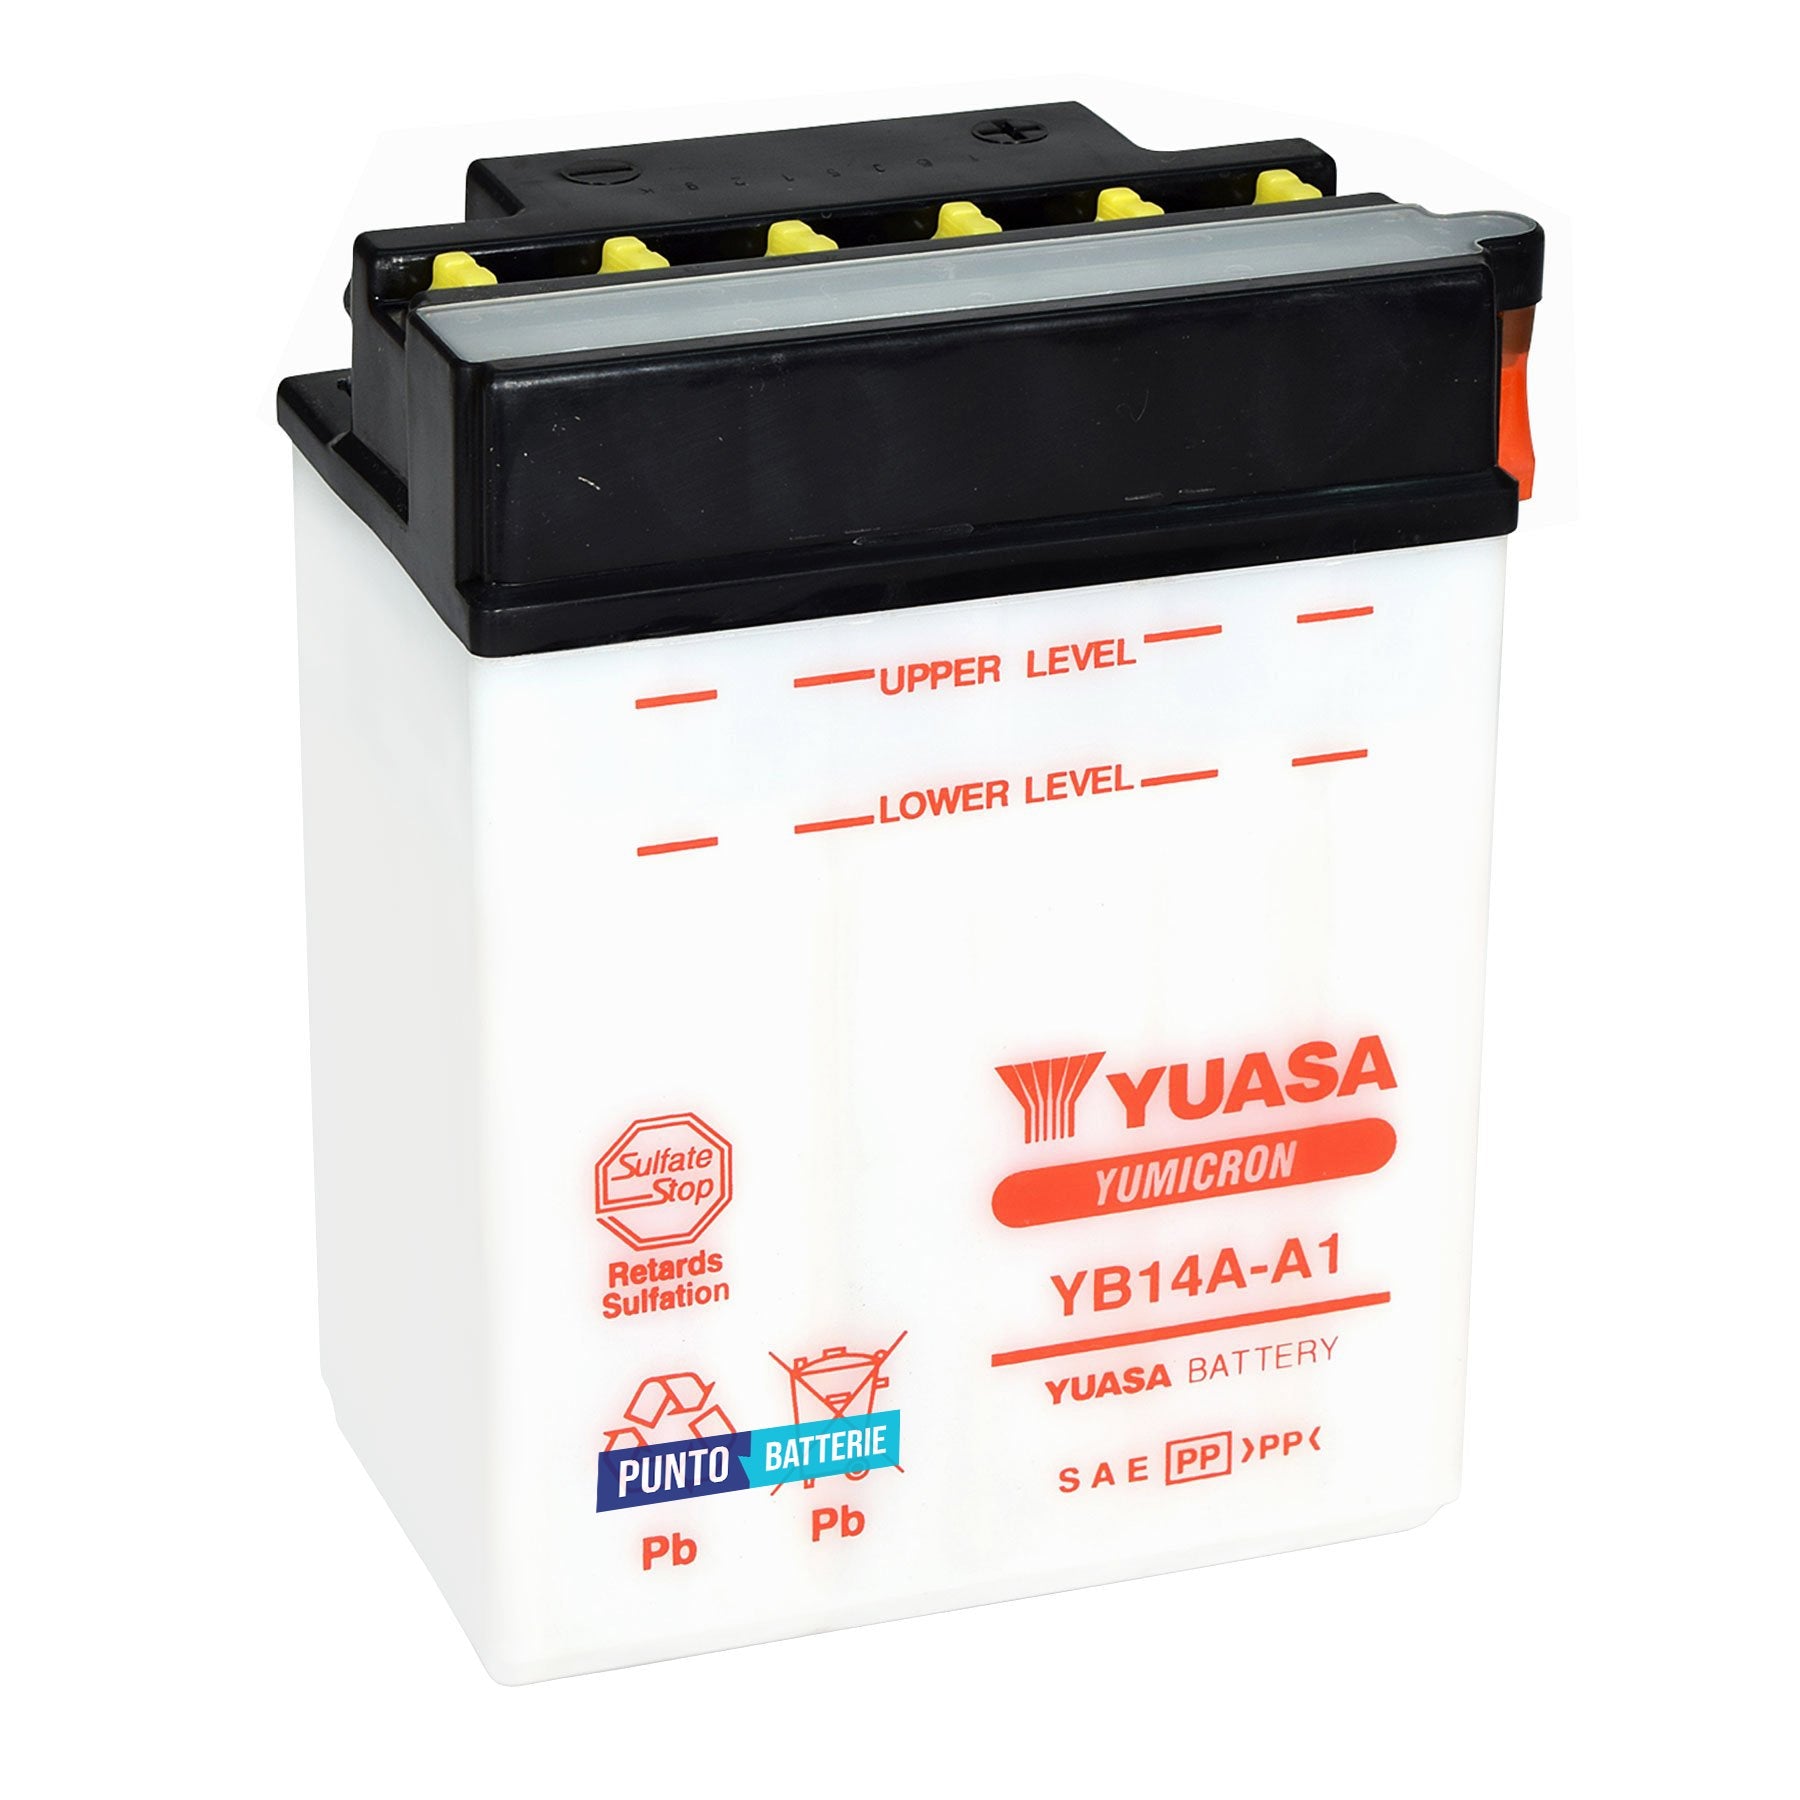 Batteria originale Yuasa YuMicron YB14A-A1, dimensioni 134 x 89 x 176, polo positivo a sinistra, 12 volt, 14 amperora, 175 ampere. Batteria per moto, scooter e powersport.